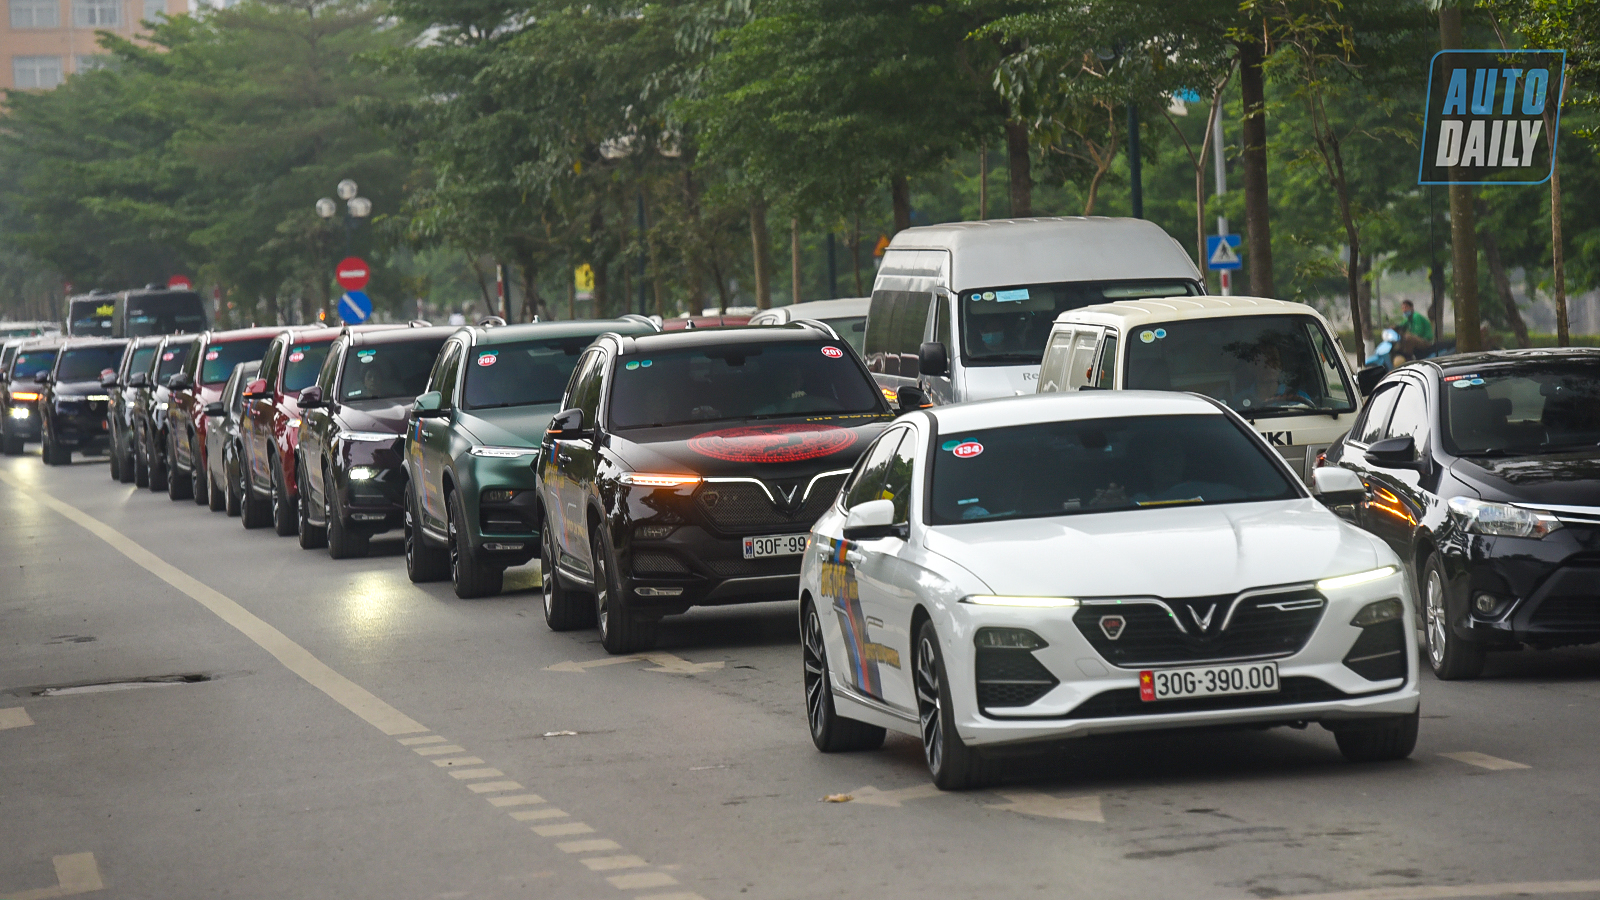 Chùm ảnh gần 60 xe VinFast Lux tại Hà Nội xuất phát Offline 3 miền tại Hội An dsc-6342-copy.jpg